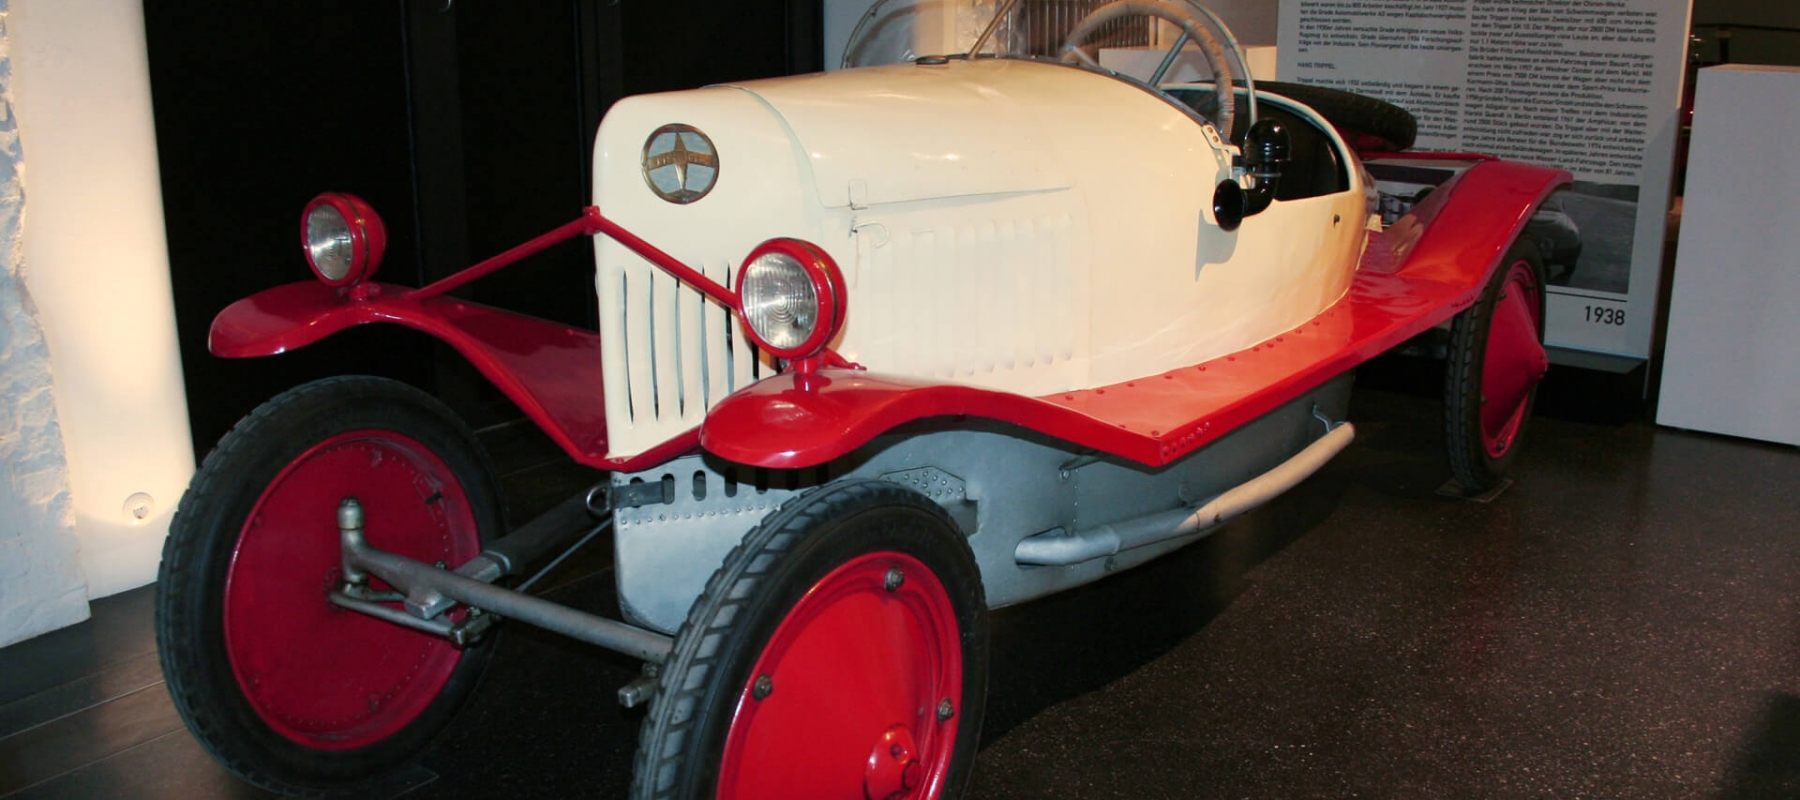 Das Hamburger Automuseum Prototyp wagte 2009 mit der Sonderausstellung 